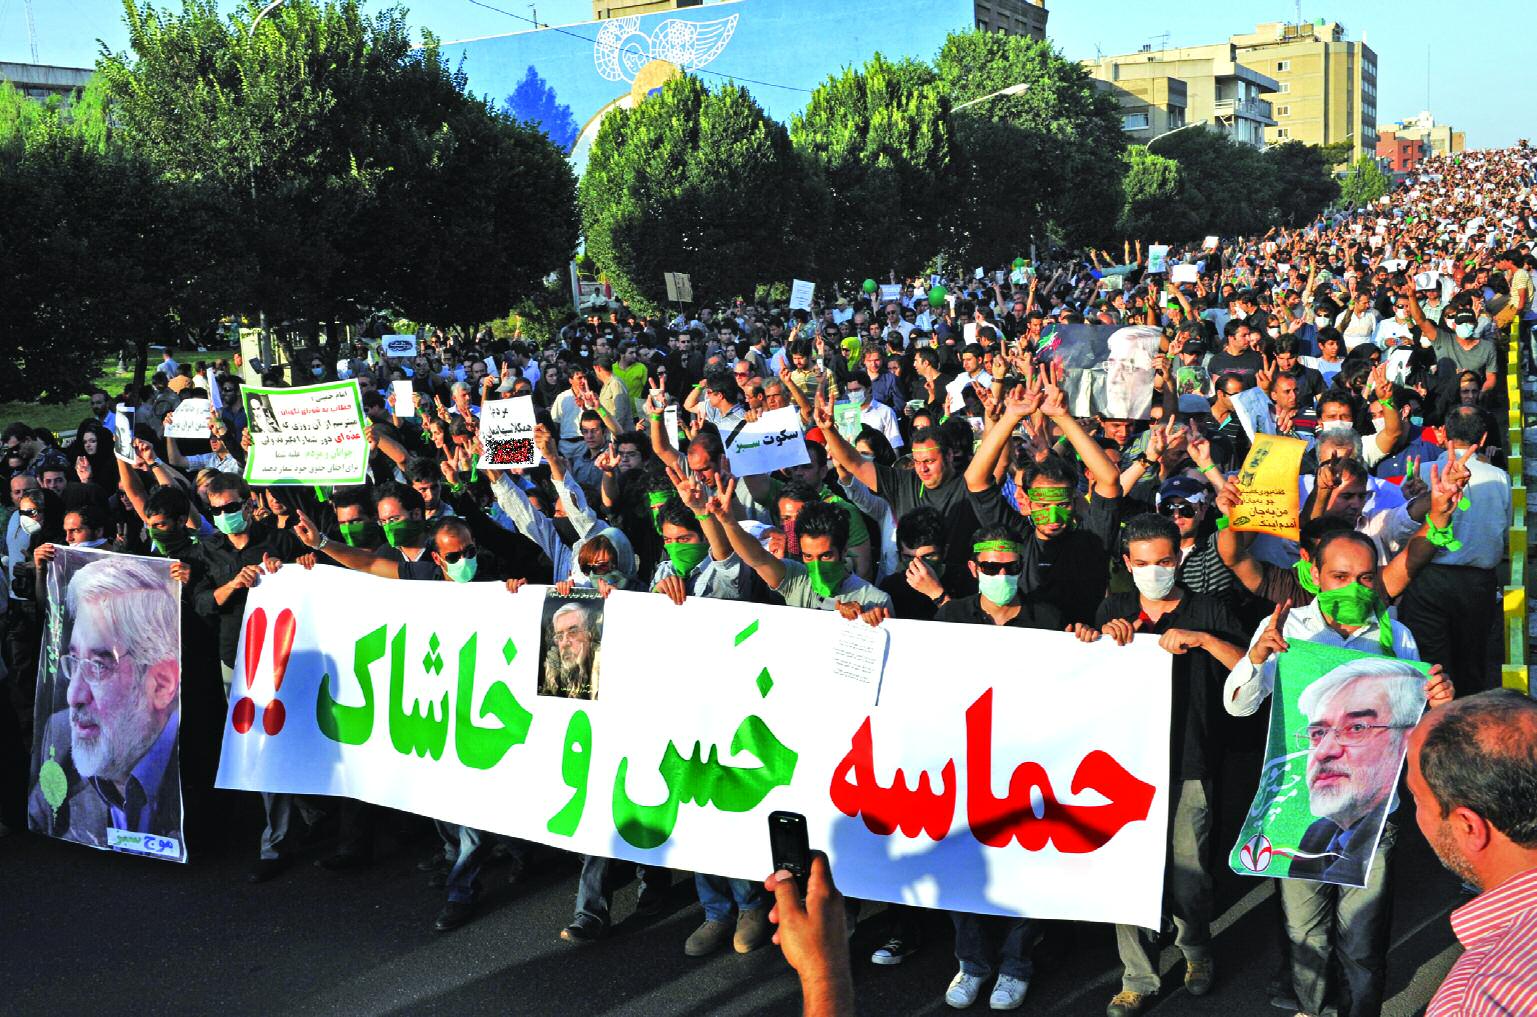 横断幕には、「木っ端・クズどもの運動！！」と書かれている。アフマディーネジャードがムーサヴィー支持者たちを「木っ端・クズ」と呼んだことがきっかけで、このことばが抗議運動の標語のようになっている。